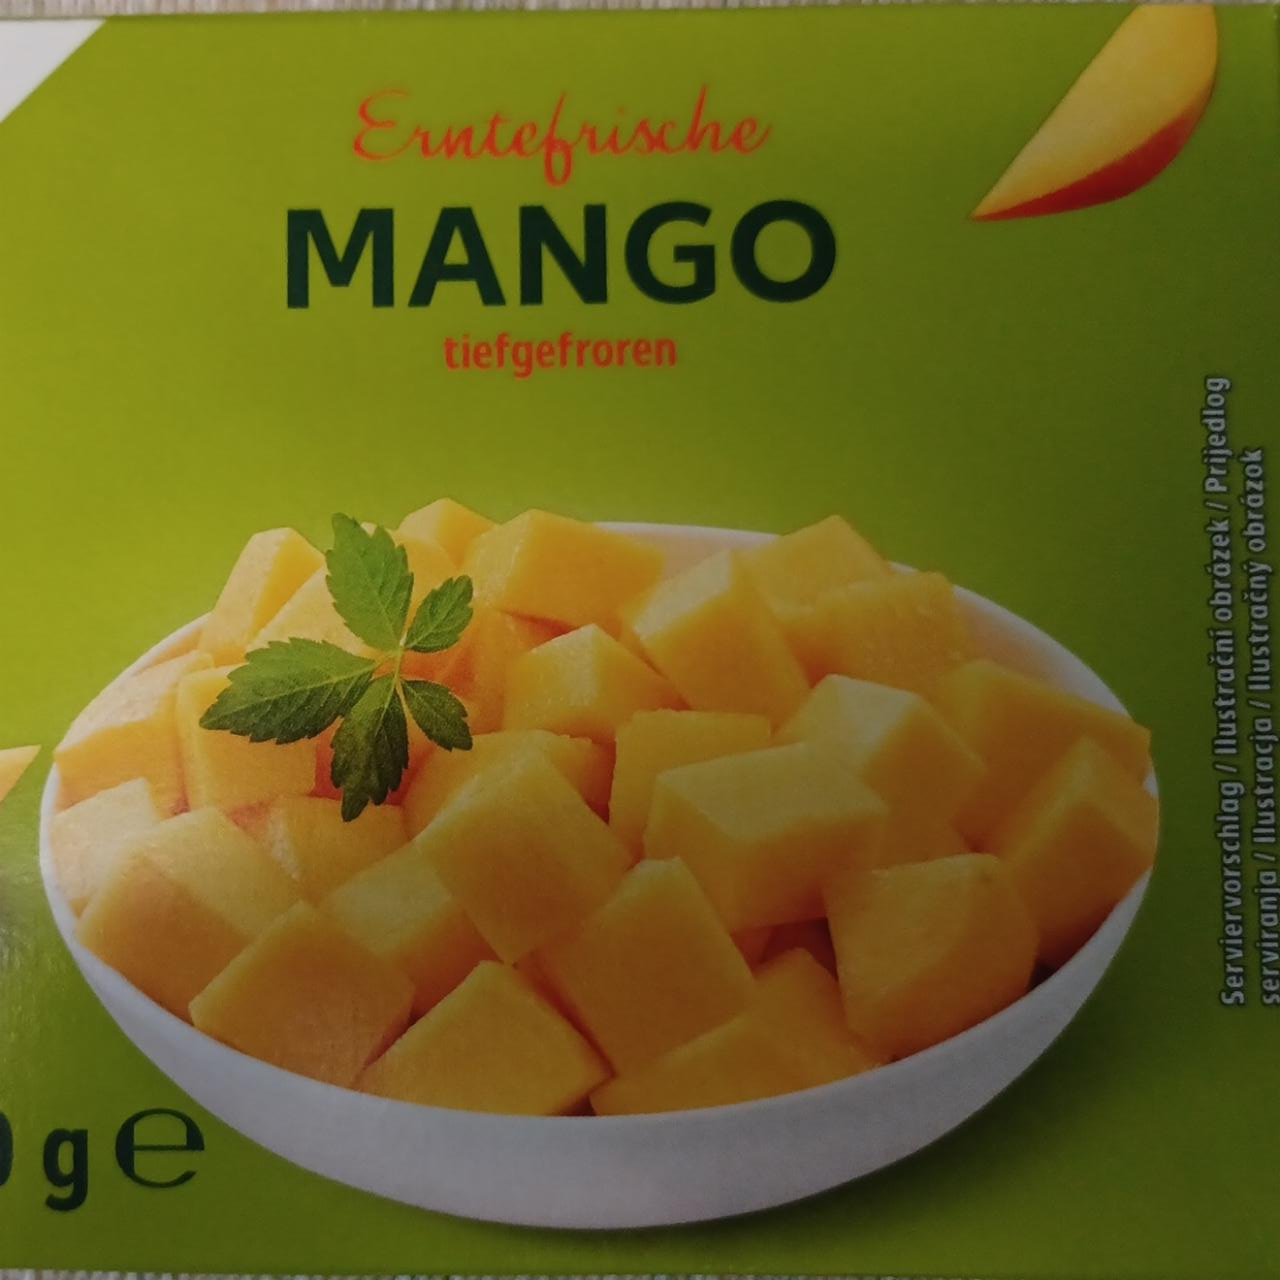 Zdjęcia - Erntefrische Mango tiefgefroren K-Classic